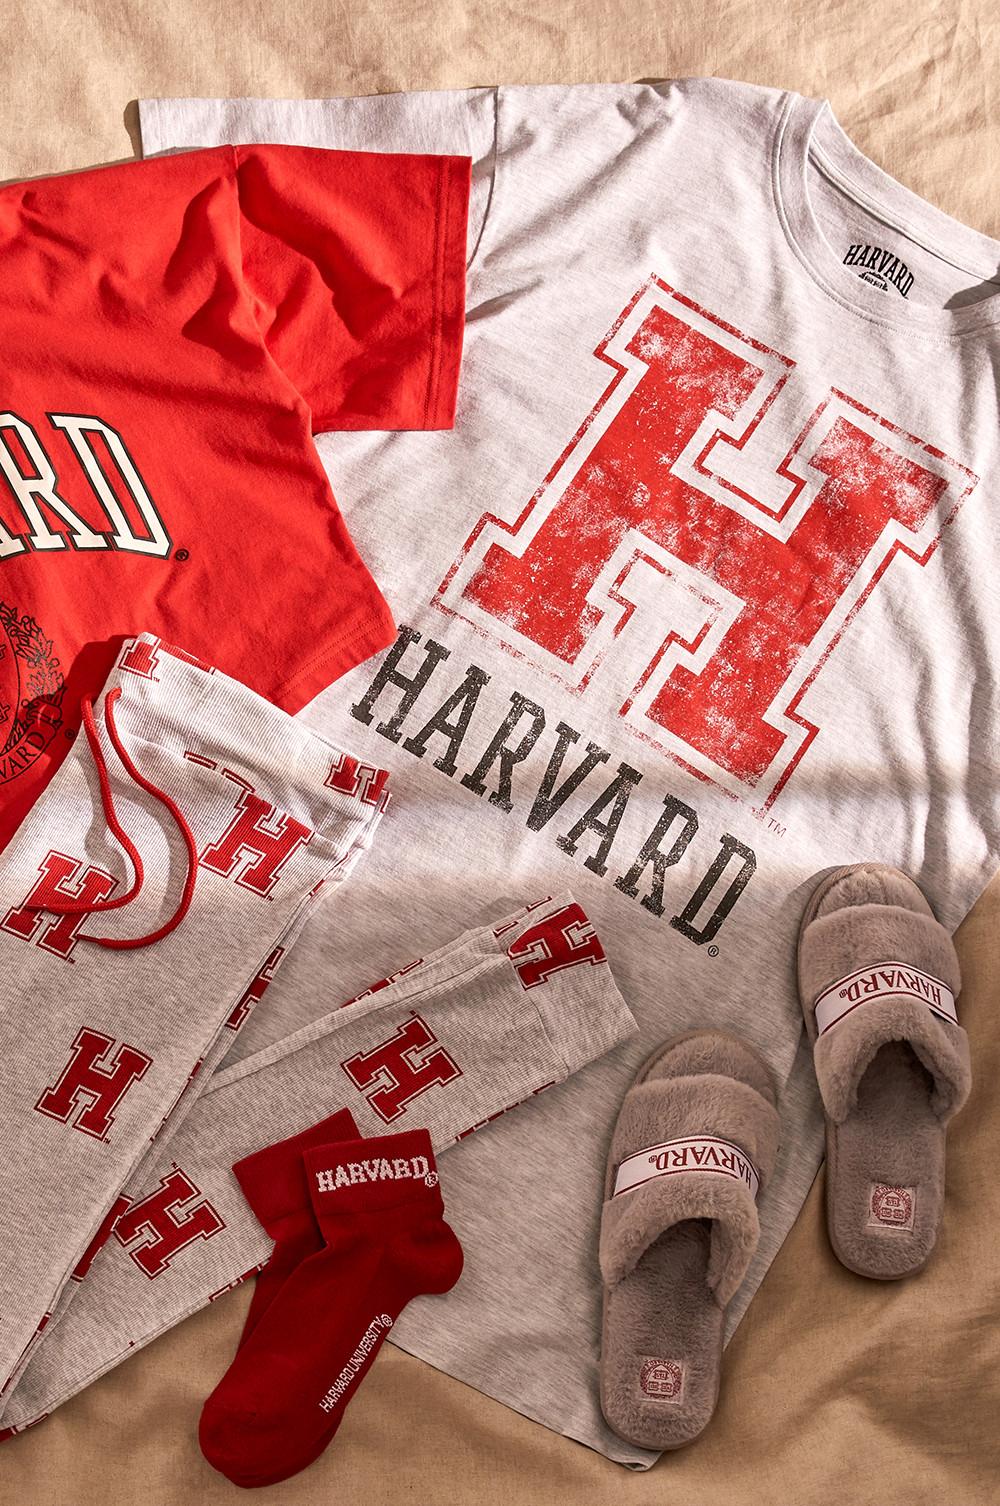 Image à plat d'un pyjama Harvard et d'accessoires déclinés dans le rouge et le gris